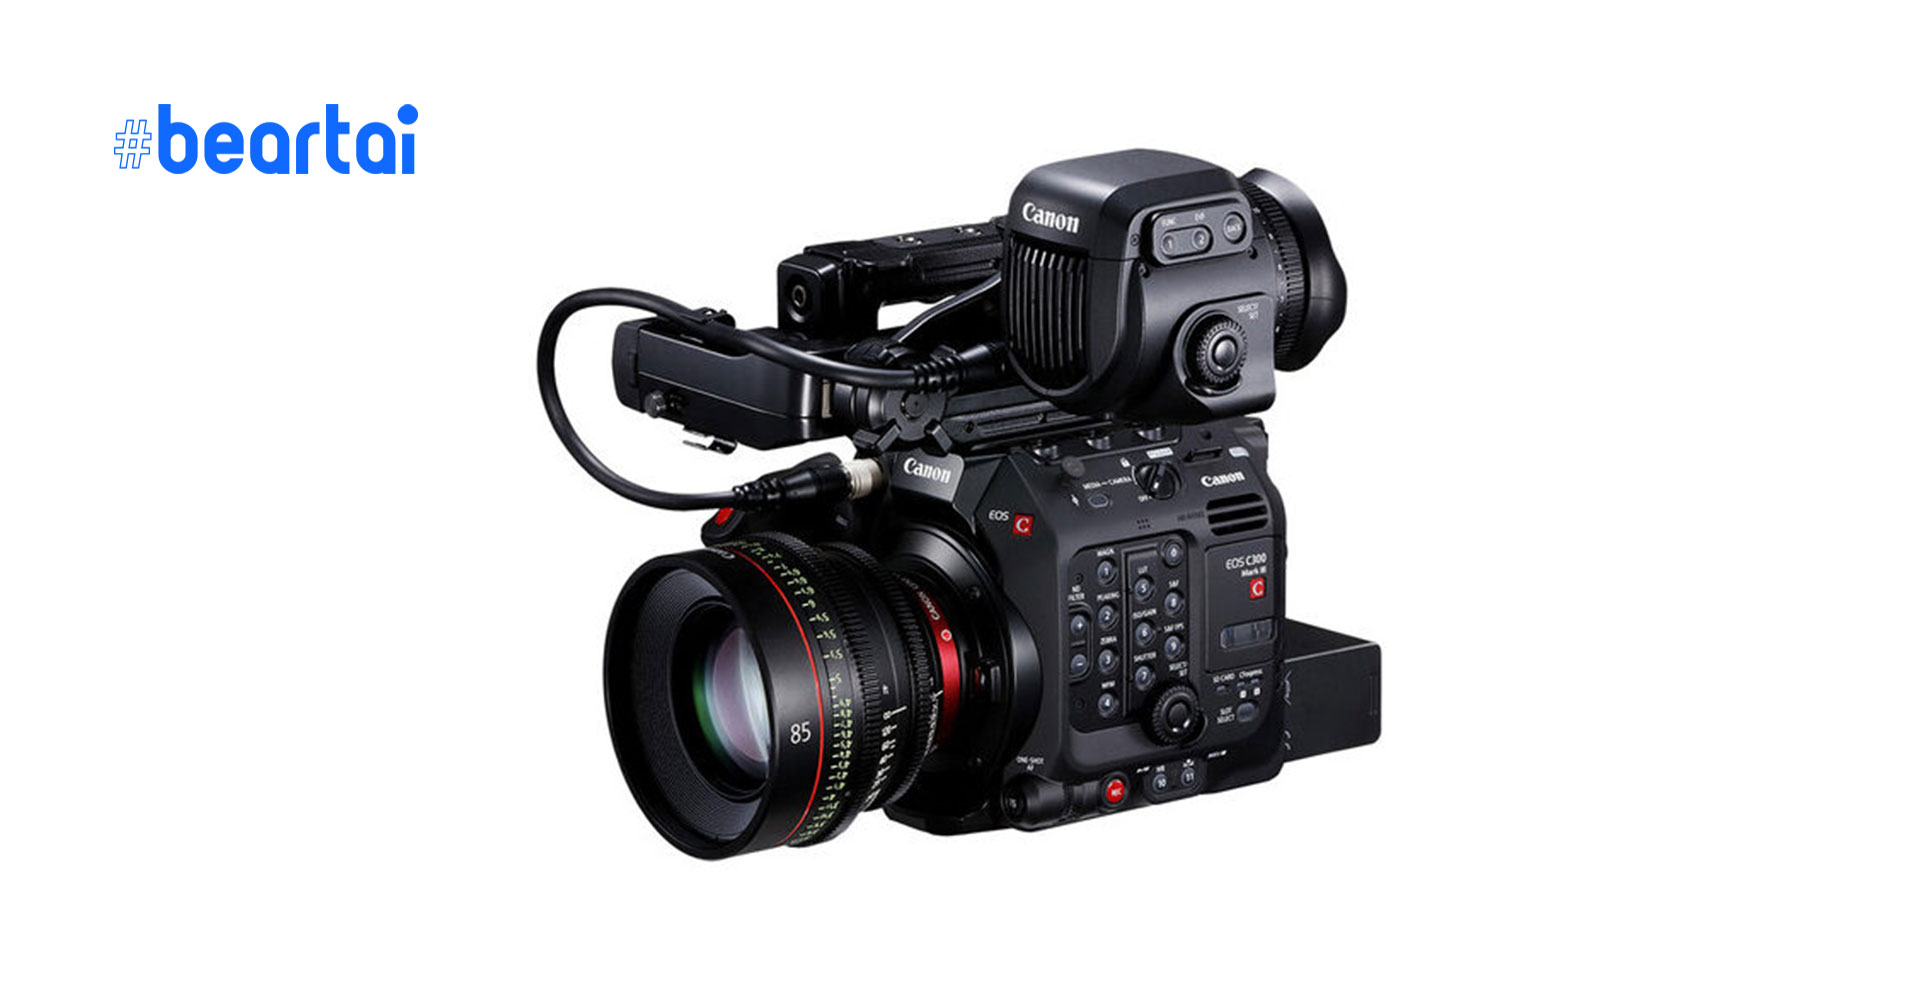 ลือ! Canon เตรียมเปิดตัวกล้องถ่ายภาพยนตร์เมาท์ RF หลายรุ่นพร้อมกล้องในซีรีส์ XC ตัวใหม่